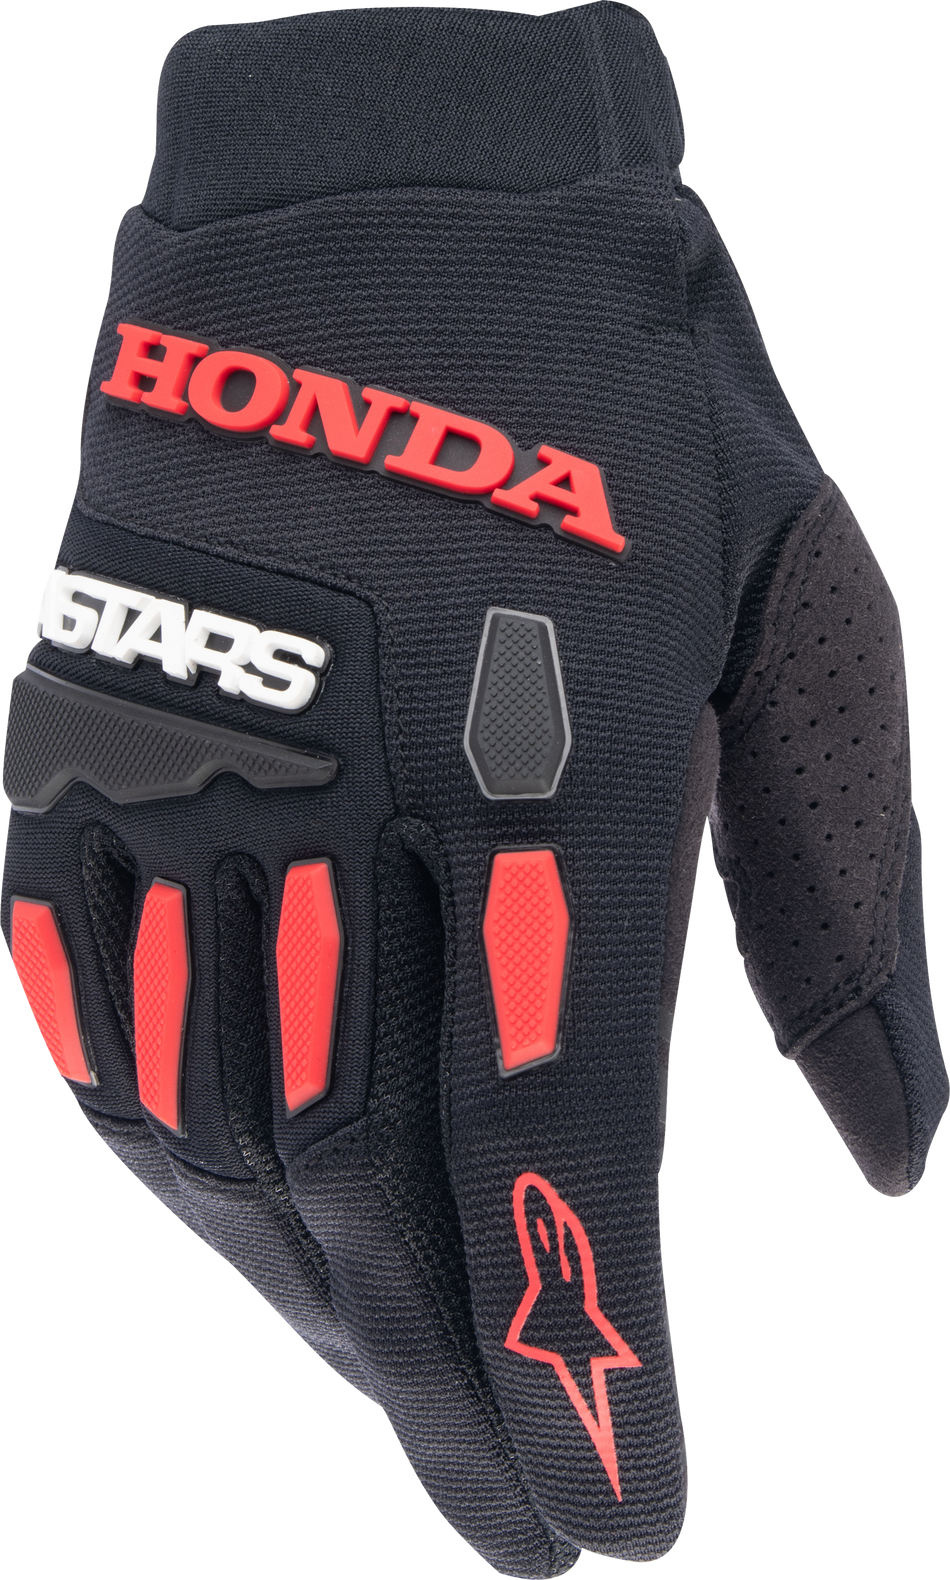 ALPINESTARS Honda Full Bore Gloves Black/Bright Red 3x 3563823-1303-3XL